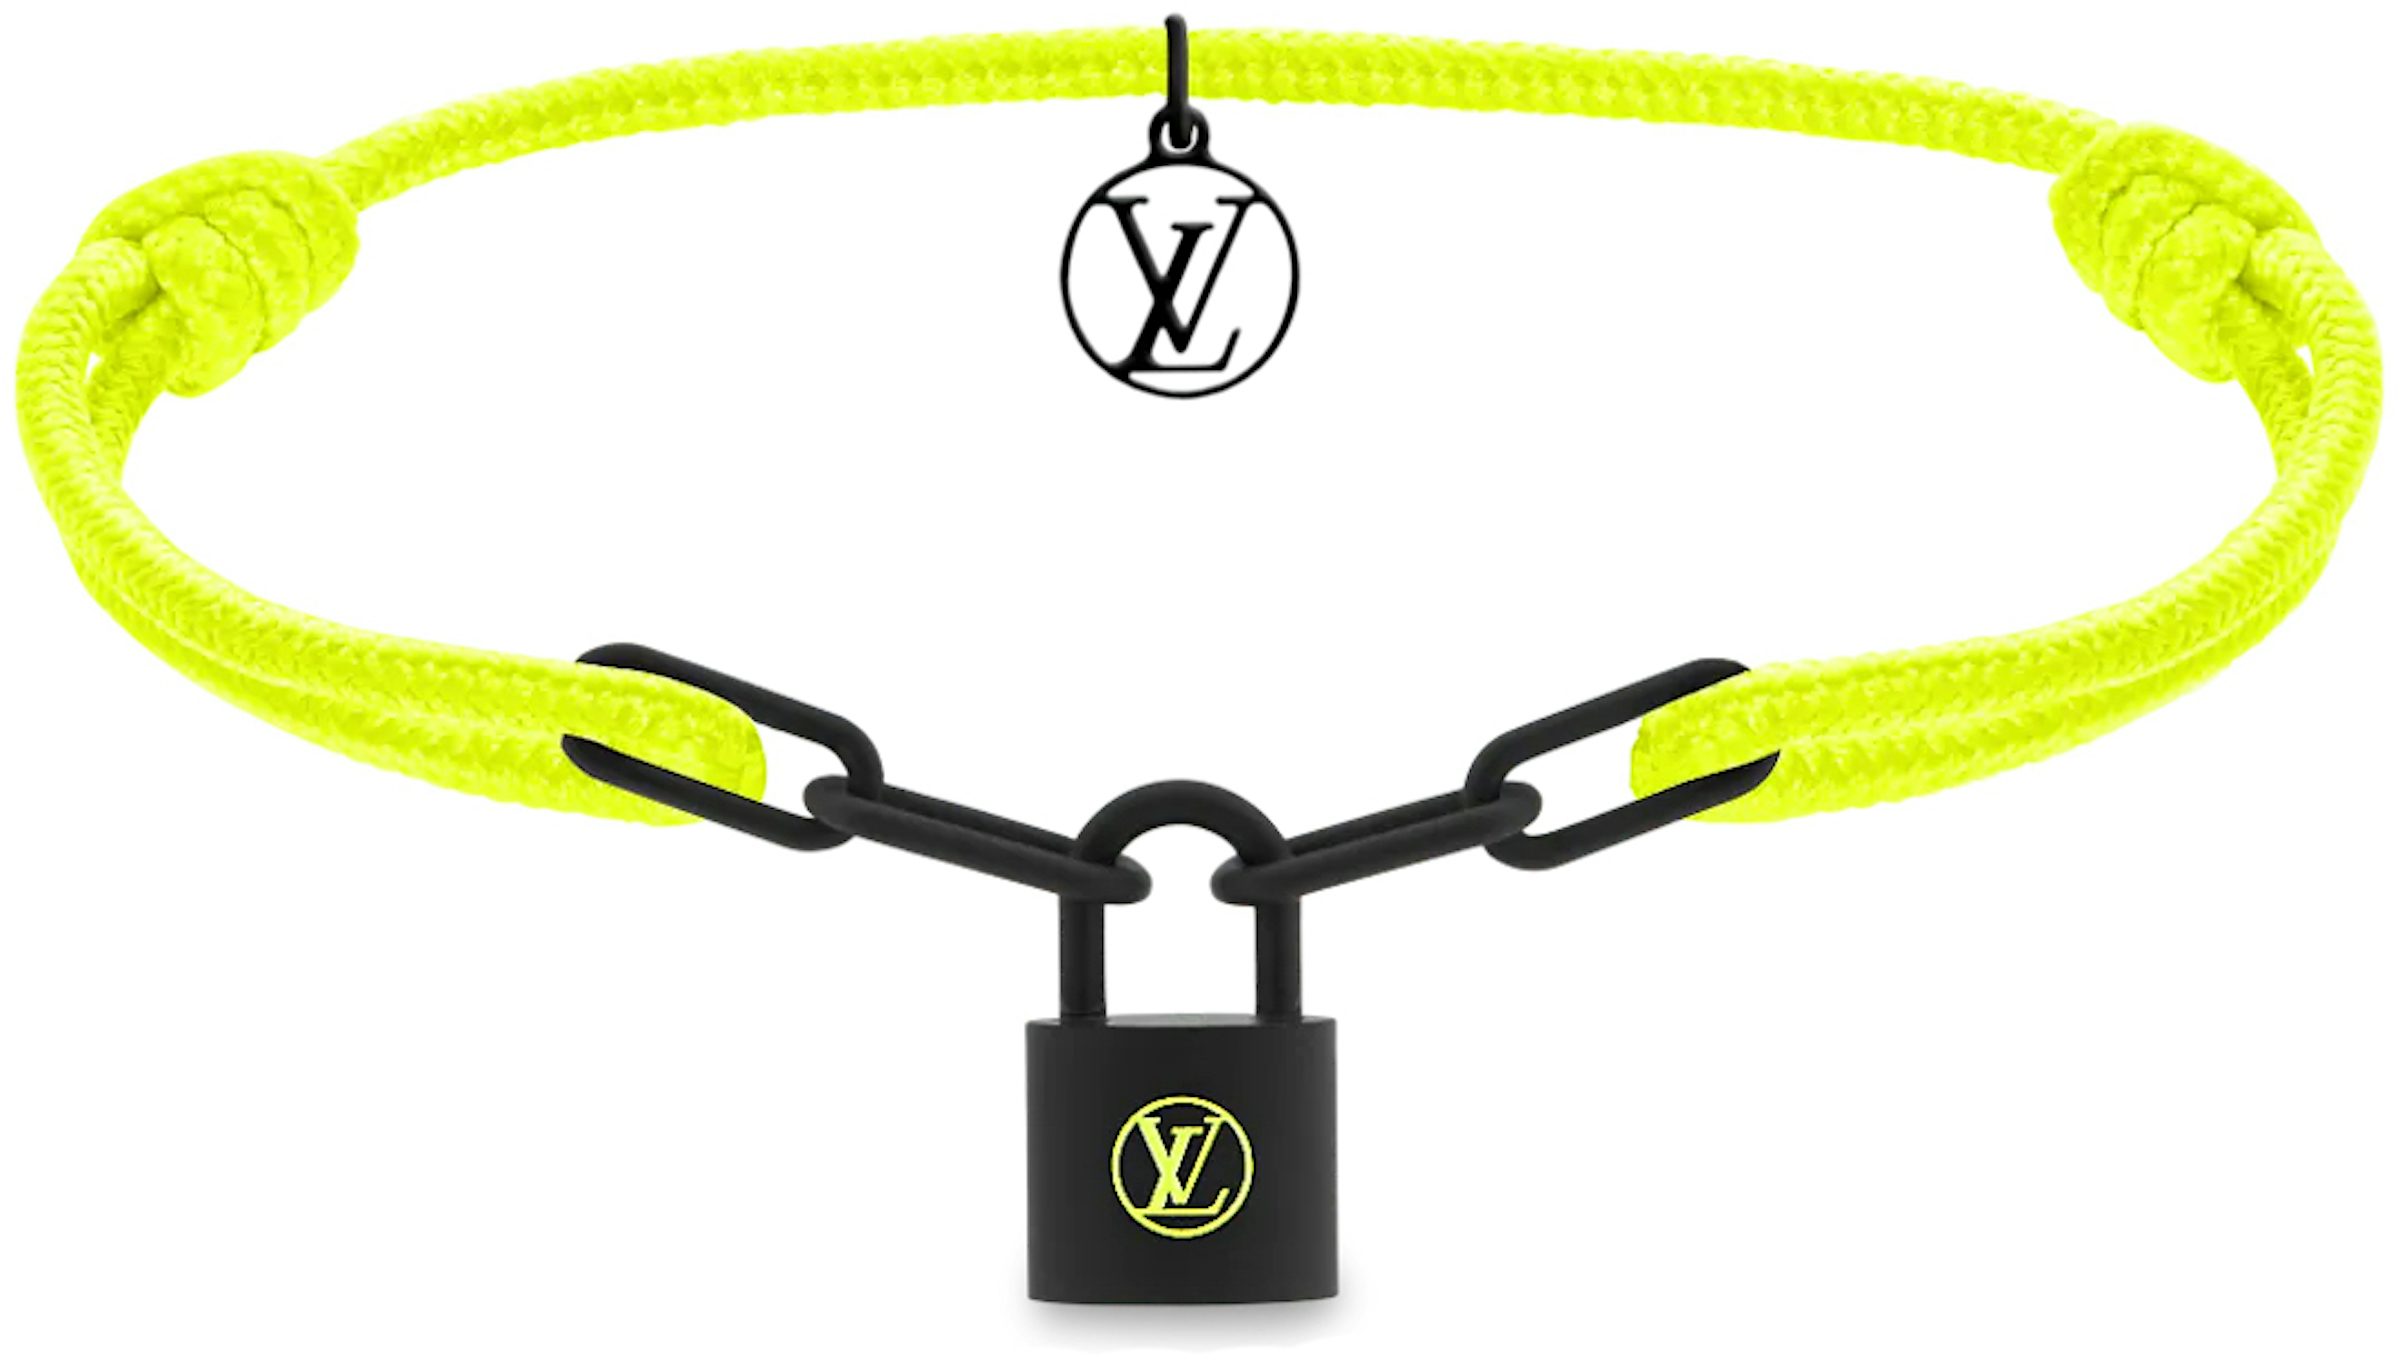 Louis Vuitton Lockit Bracelet